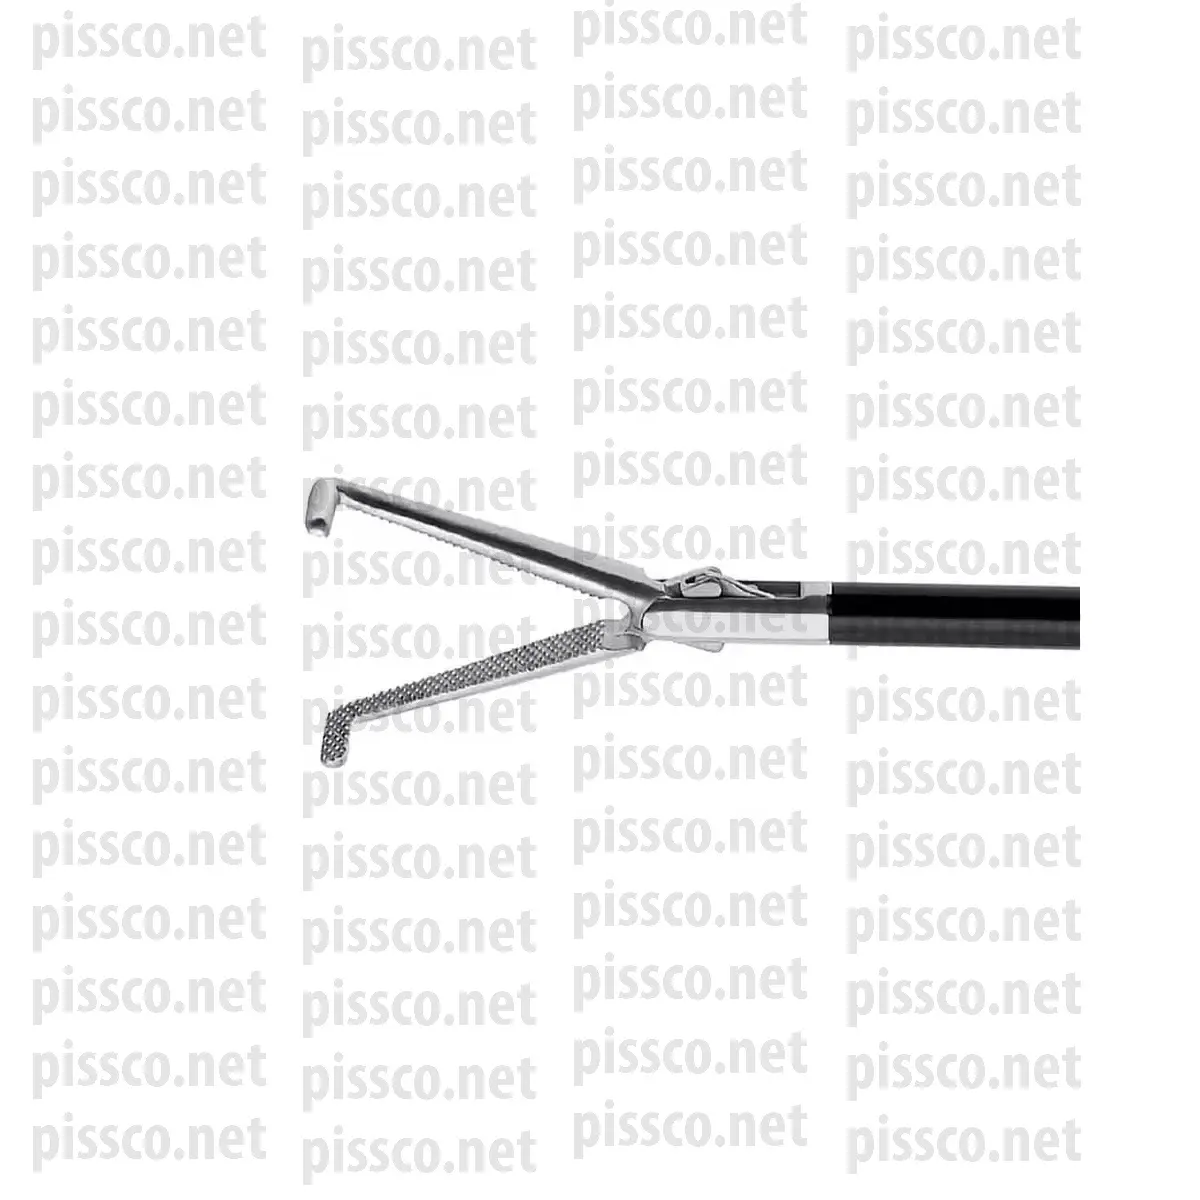 Bester Hersteller Pissco für bariat rische Chirurgie Mischer klemme 90 Grad abgewinkelt 5mm x 31cm laparoskopische medizinische Instrumente